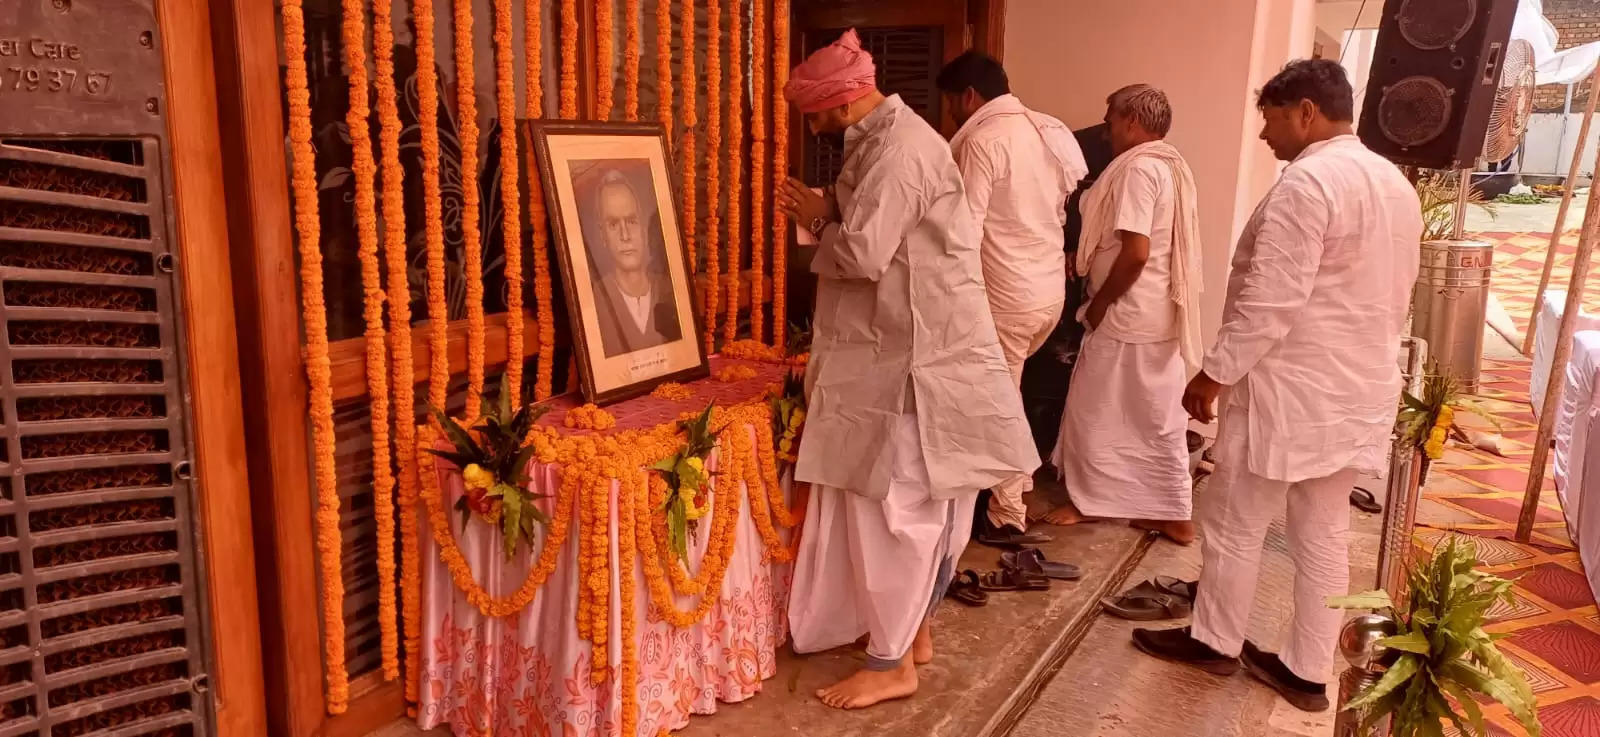 बौरी स्थित पूर्व सांसद रामकिशुन के आवास पर स्वर्गीय गंजी प्रसाद को श्रद्धांजलि देते मनोज सिंह डब्लू